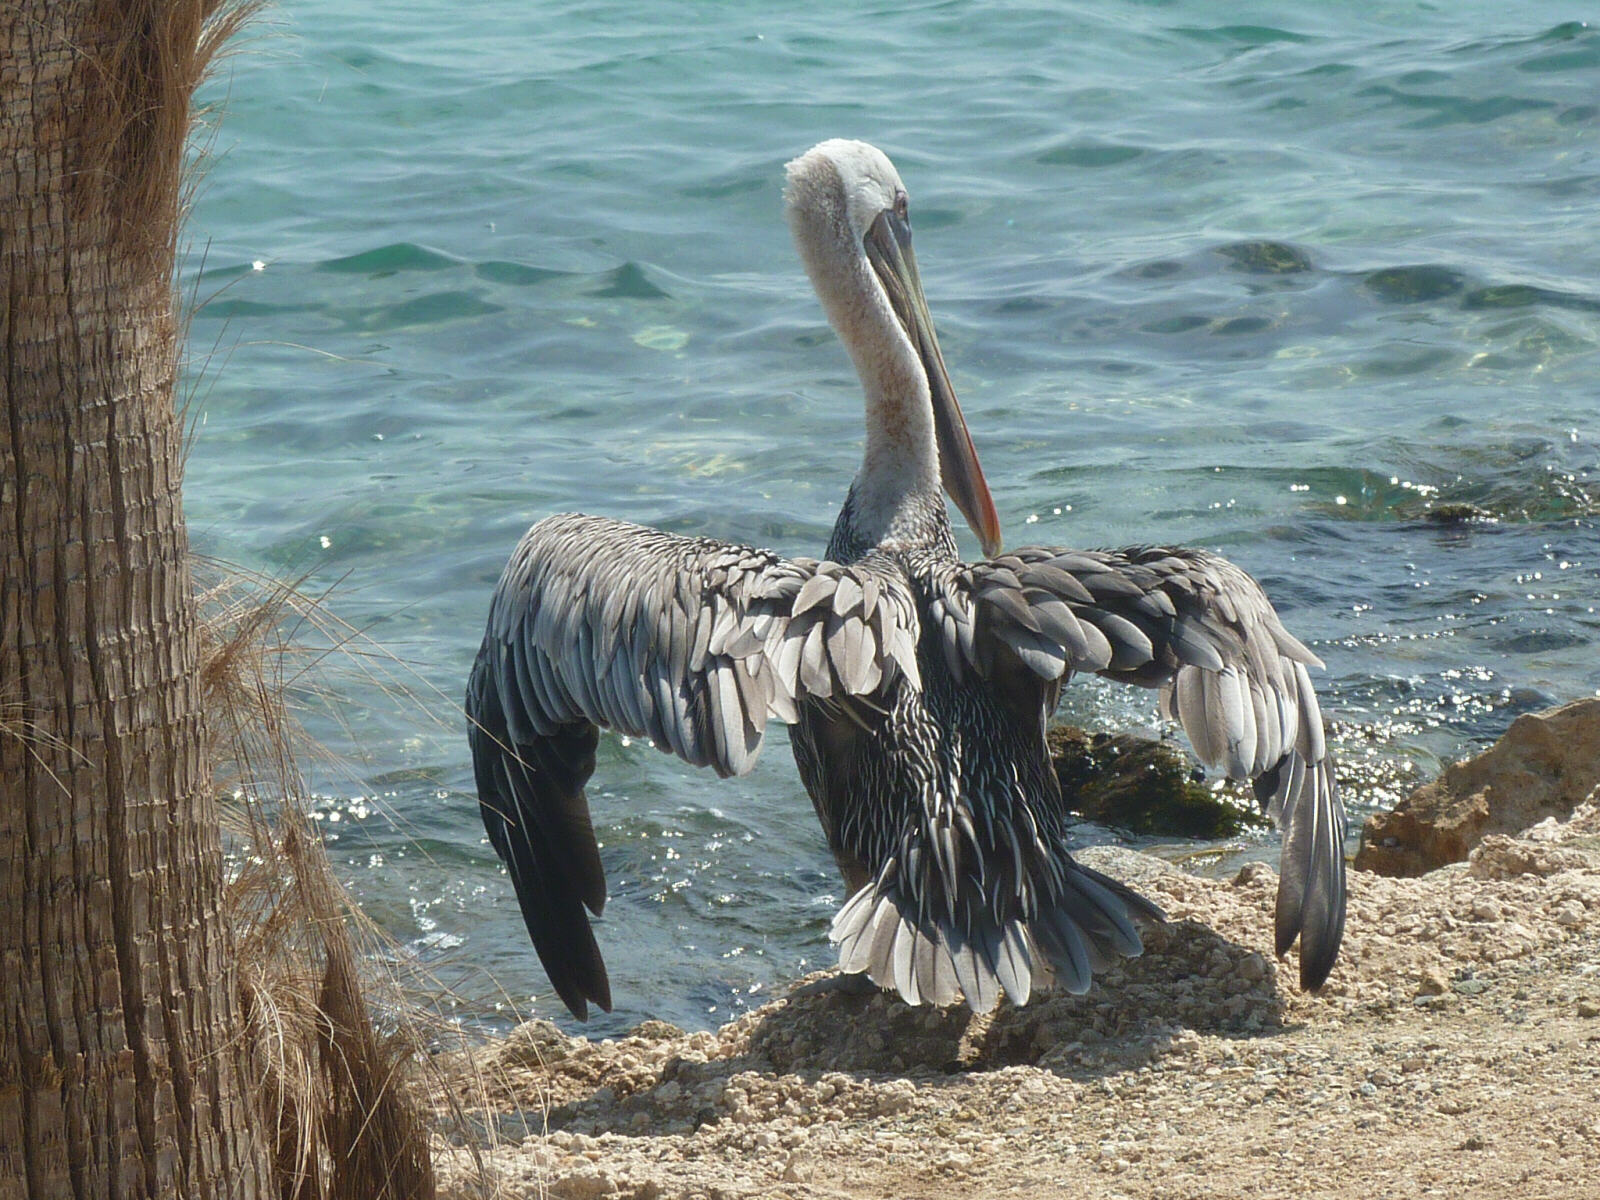 A pelican by the sea at Oranjestad, Aruba